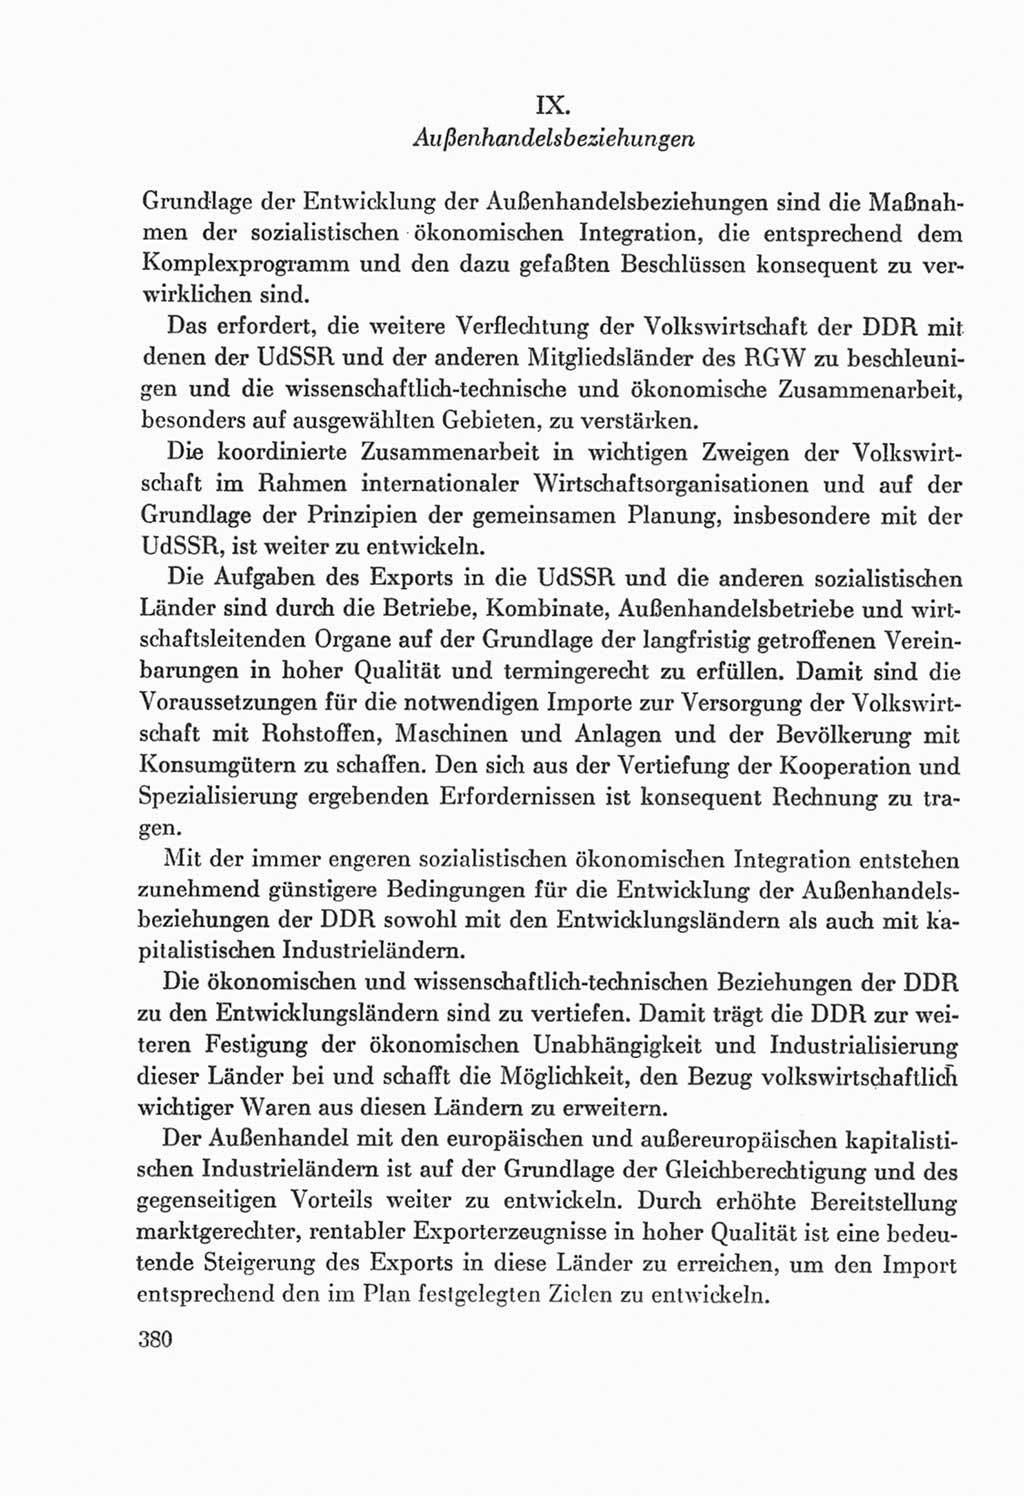 Protokoll der Verhandlungen des Ⅸ. Parteitages der Sozialistischen Einheitspartei Deutschlands (SED) [Deutsche Demokratische Republik (DDR)] 1976, Band 2, Seite 380 (Prot. Verh. Ⅸ. PT SED DDR 1976, Bd. 2, S. 380)